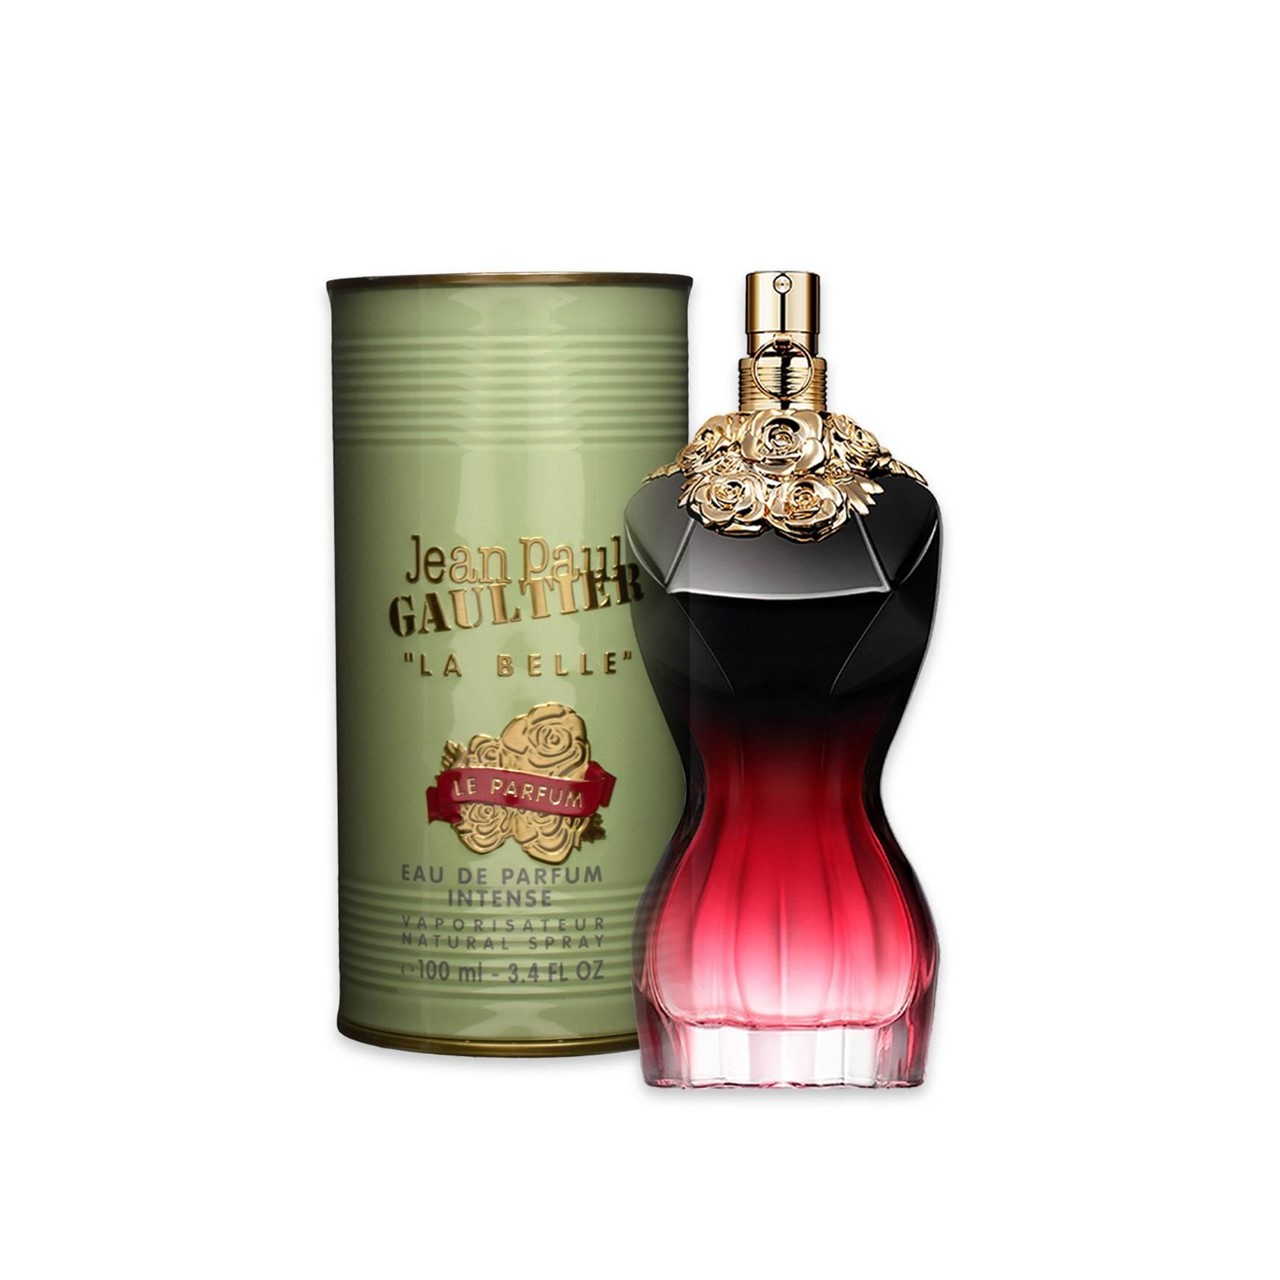 Jean Paul Gaultier La Belle Le Parfum Eau de Parfum Intense 100ml (3.4fl oz)